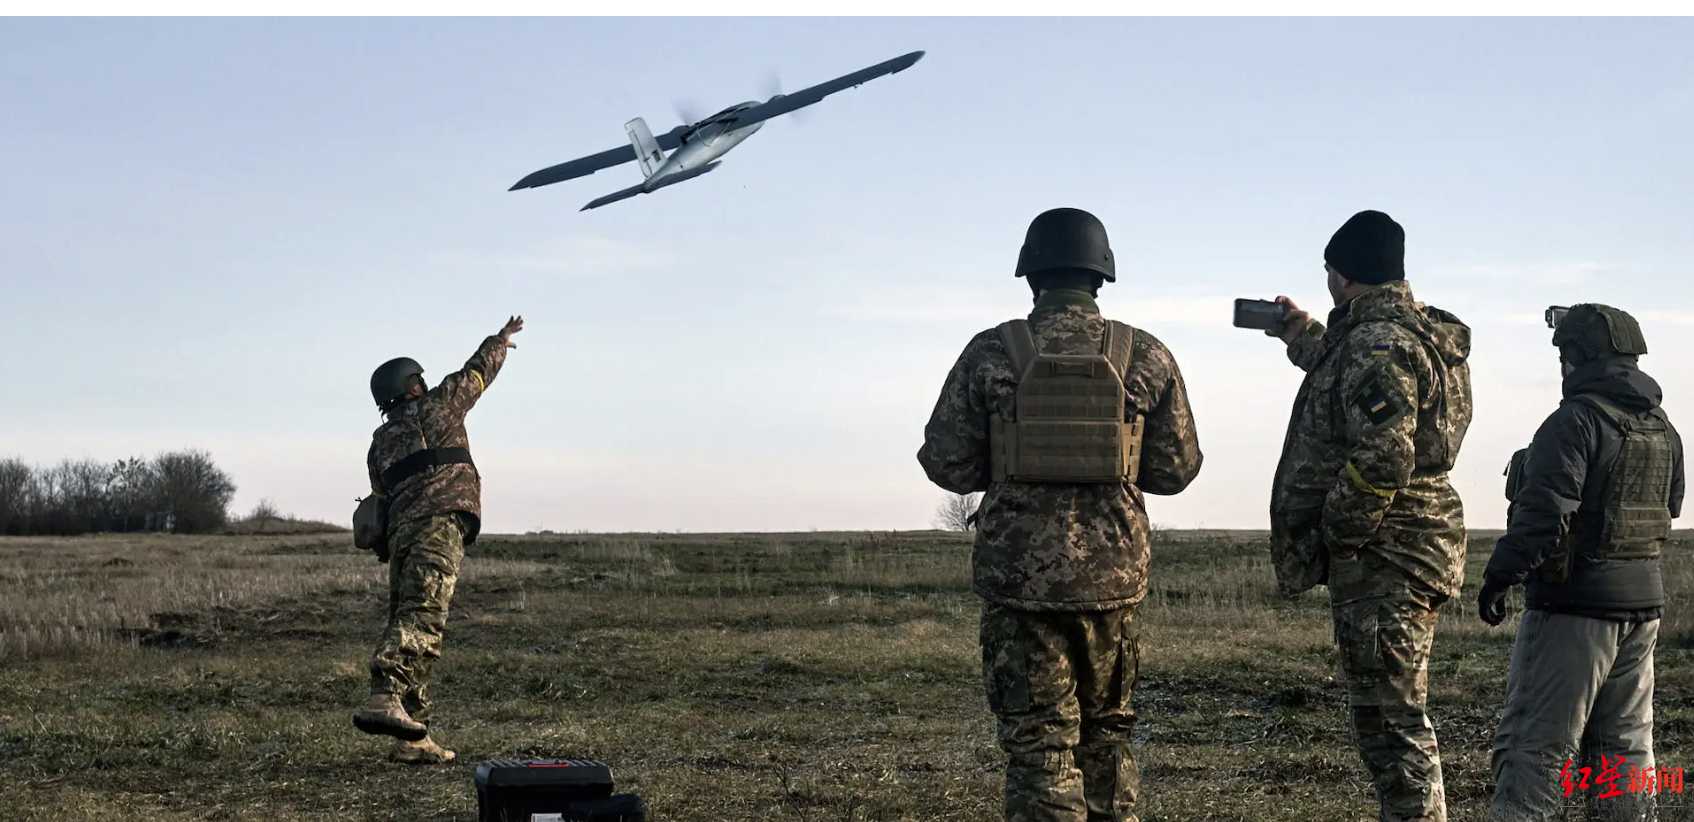 ↑乌军正在放飞一架无人机